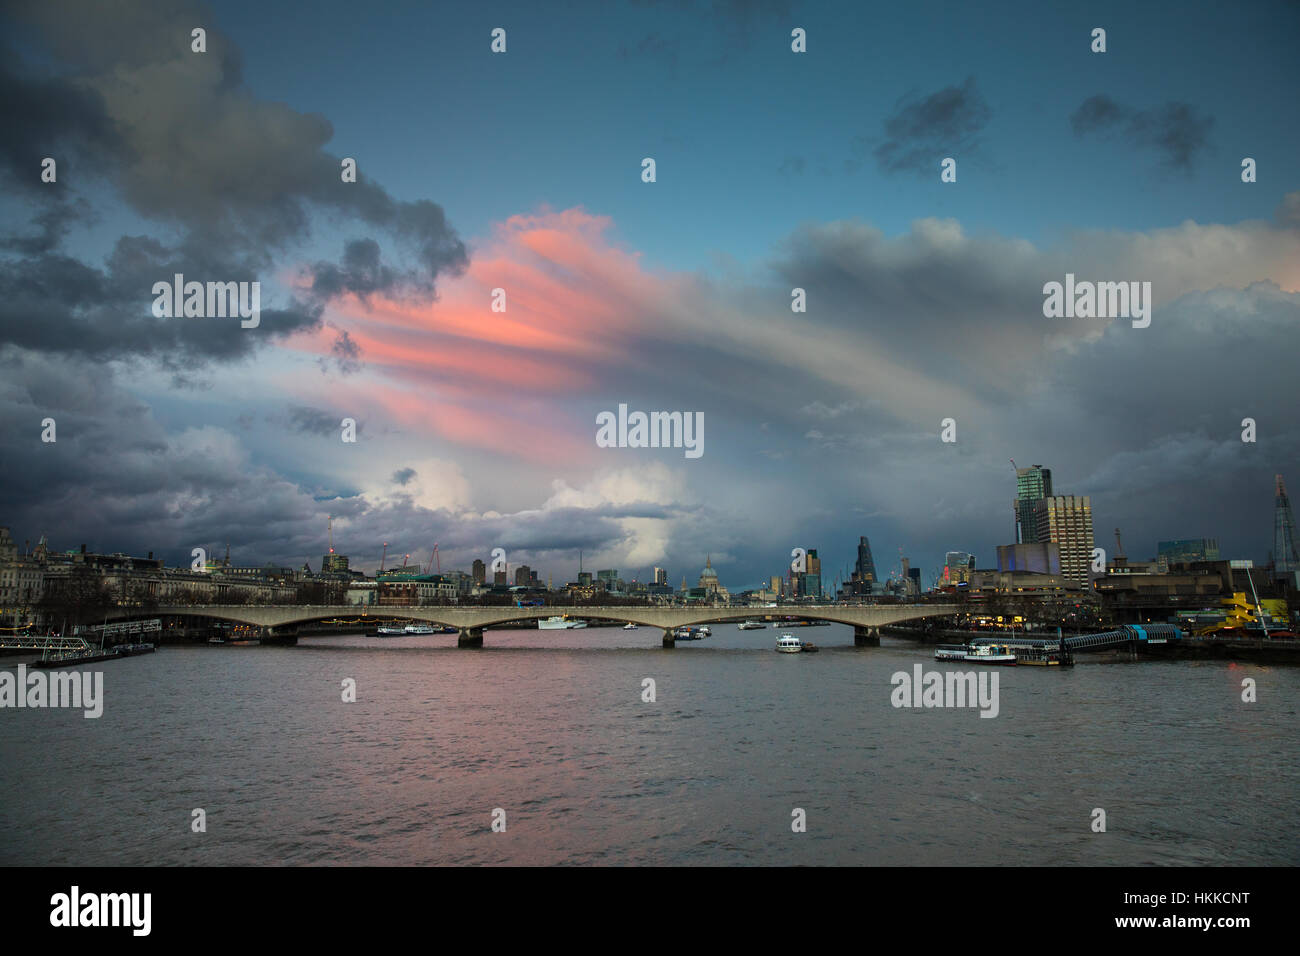 Londres, Royaume-Uni. 28 janvier, 2017. Soirée magnifique vue sur Waterloo Bridge, vu de Charing Cross, avec des nuages roses au coucher du soleil. Credit : Carol Moir/Alamy Live News. Banque D'Images